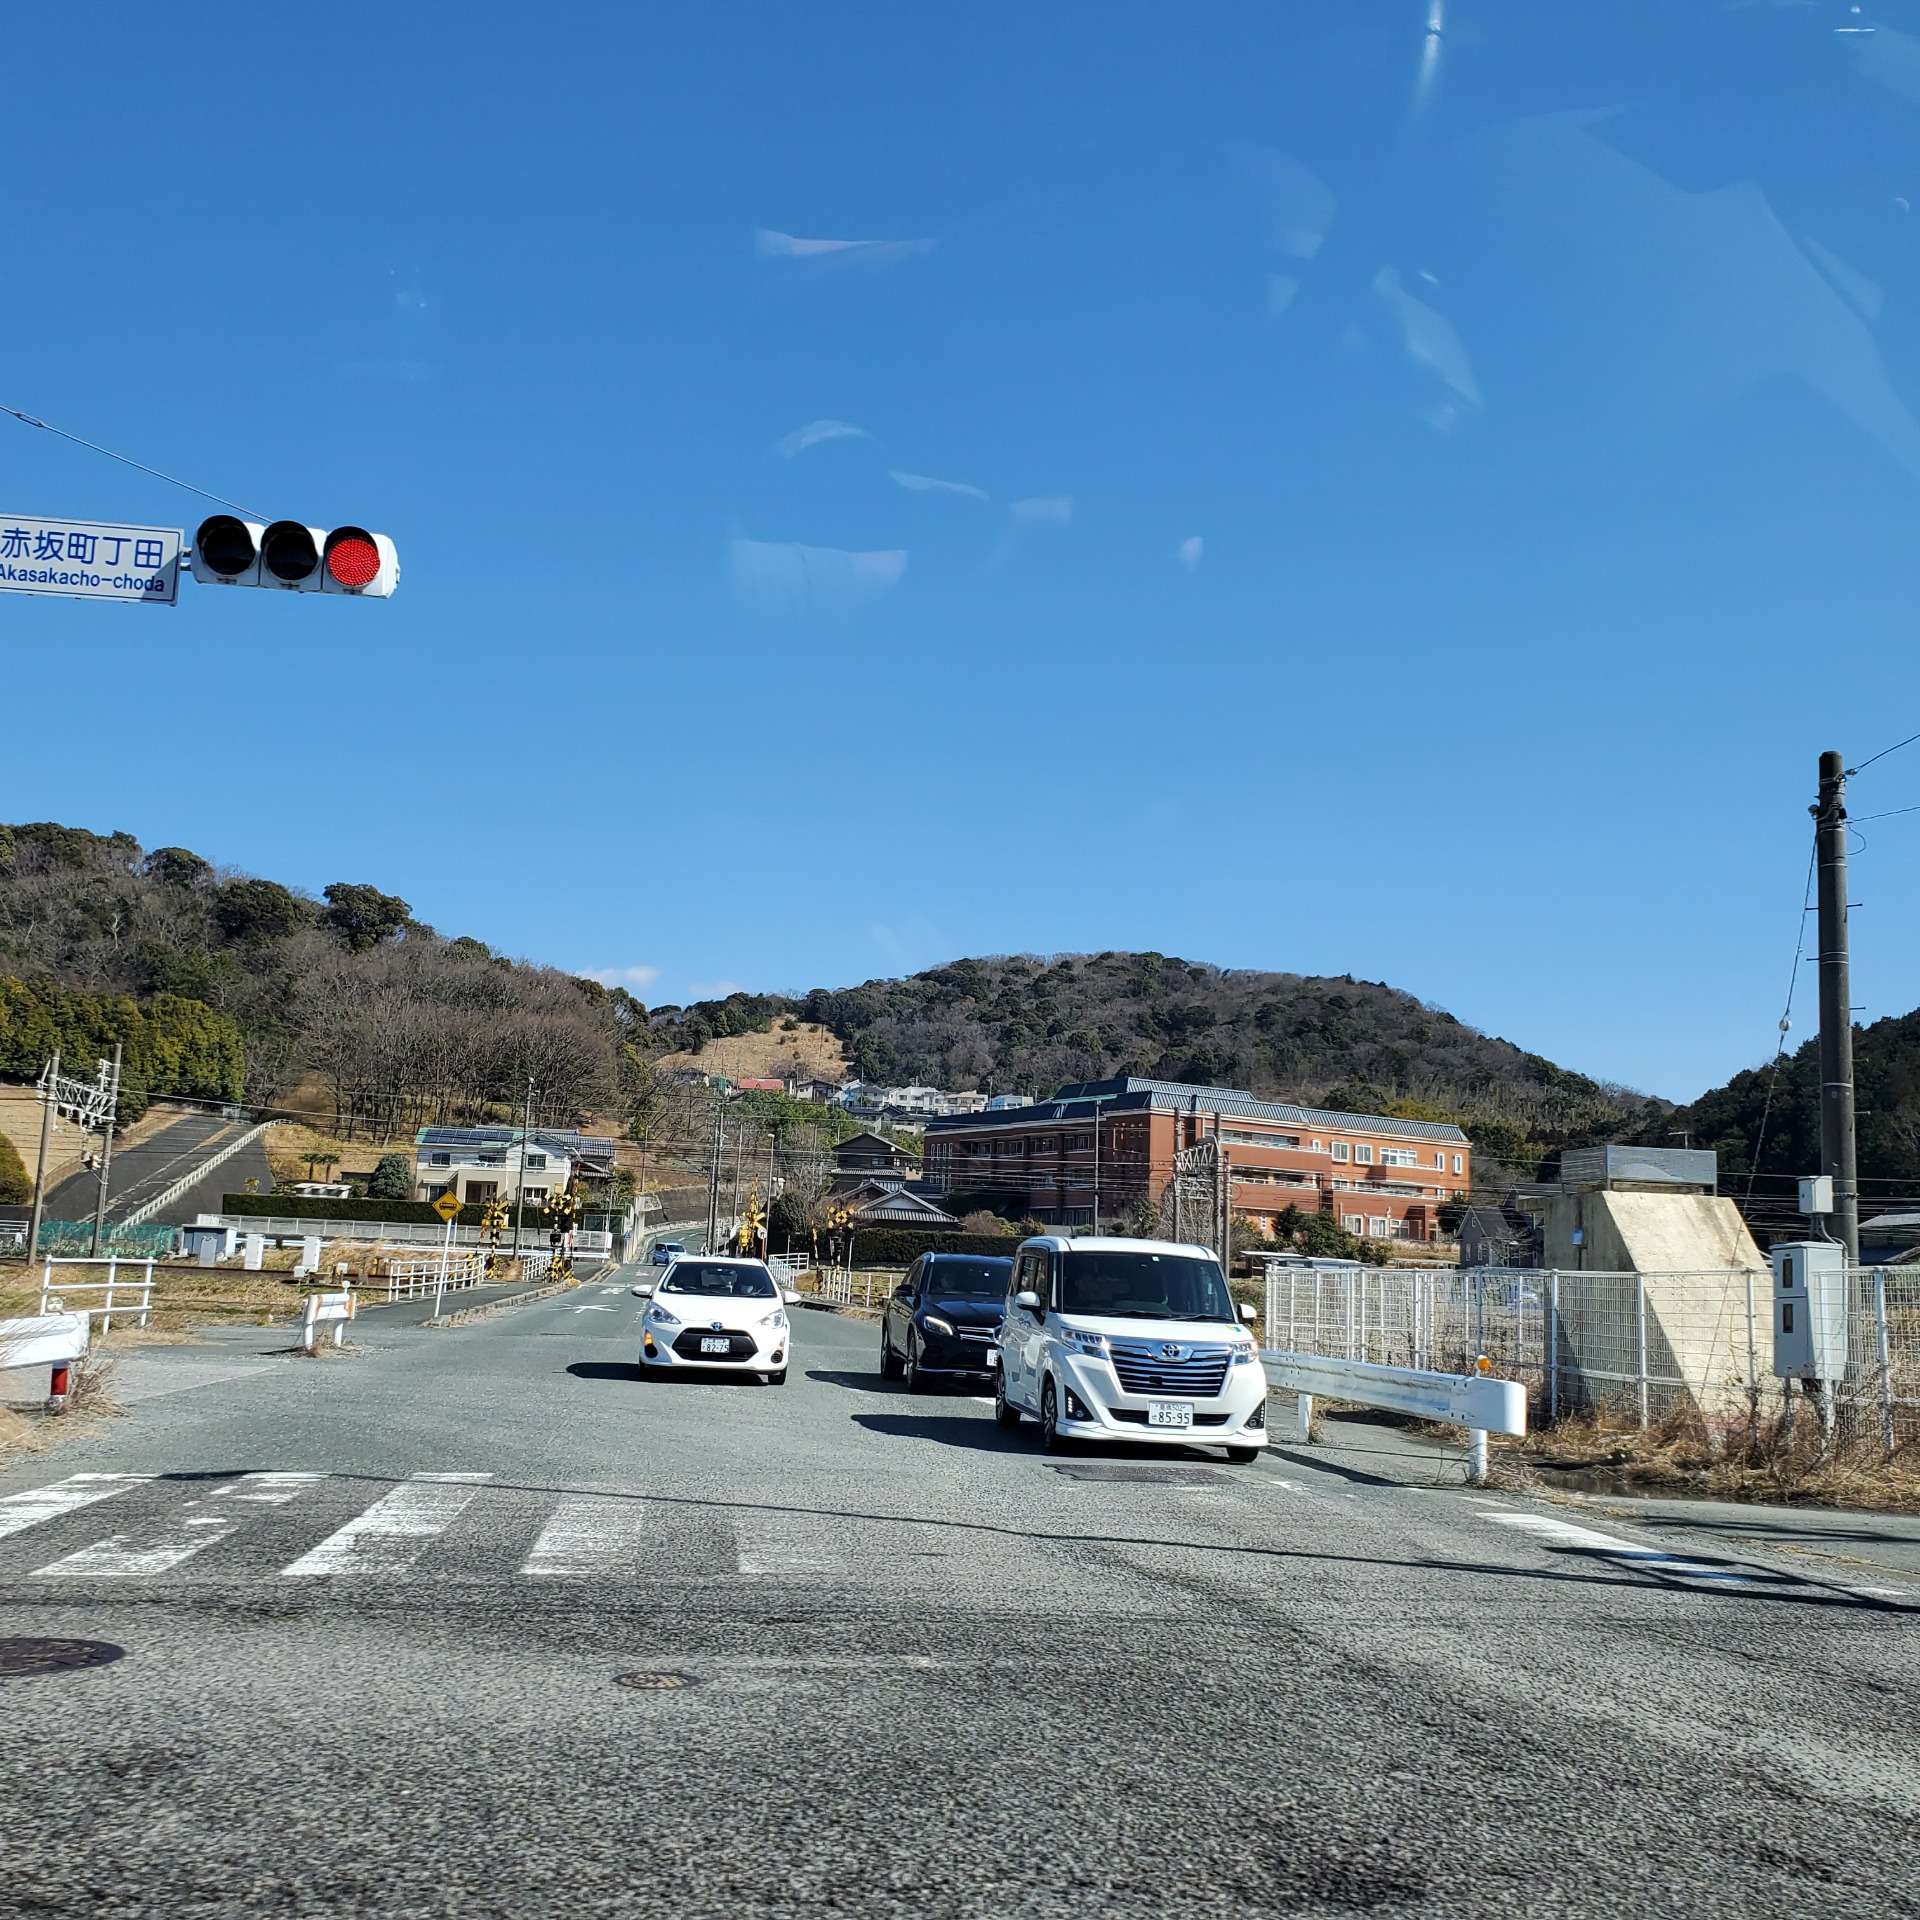 愛知県蒲郡市のカビ取り・カビ対策はMIST工法カビバスターズが根こそぎ解決致します。